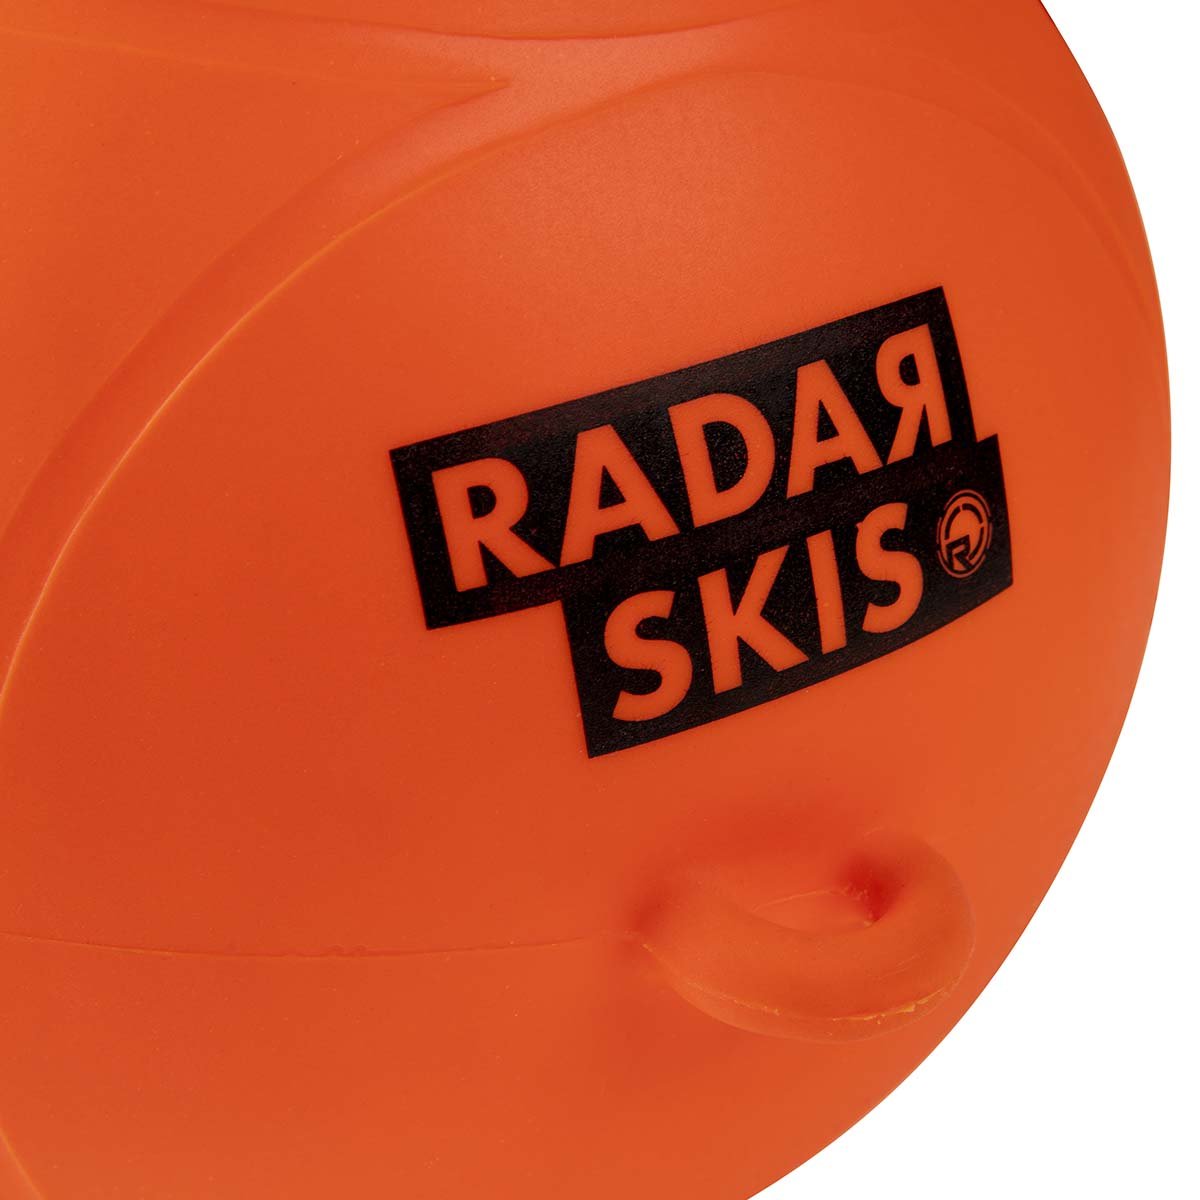 Radar Water Ski Buoy - BoardCo